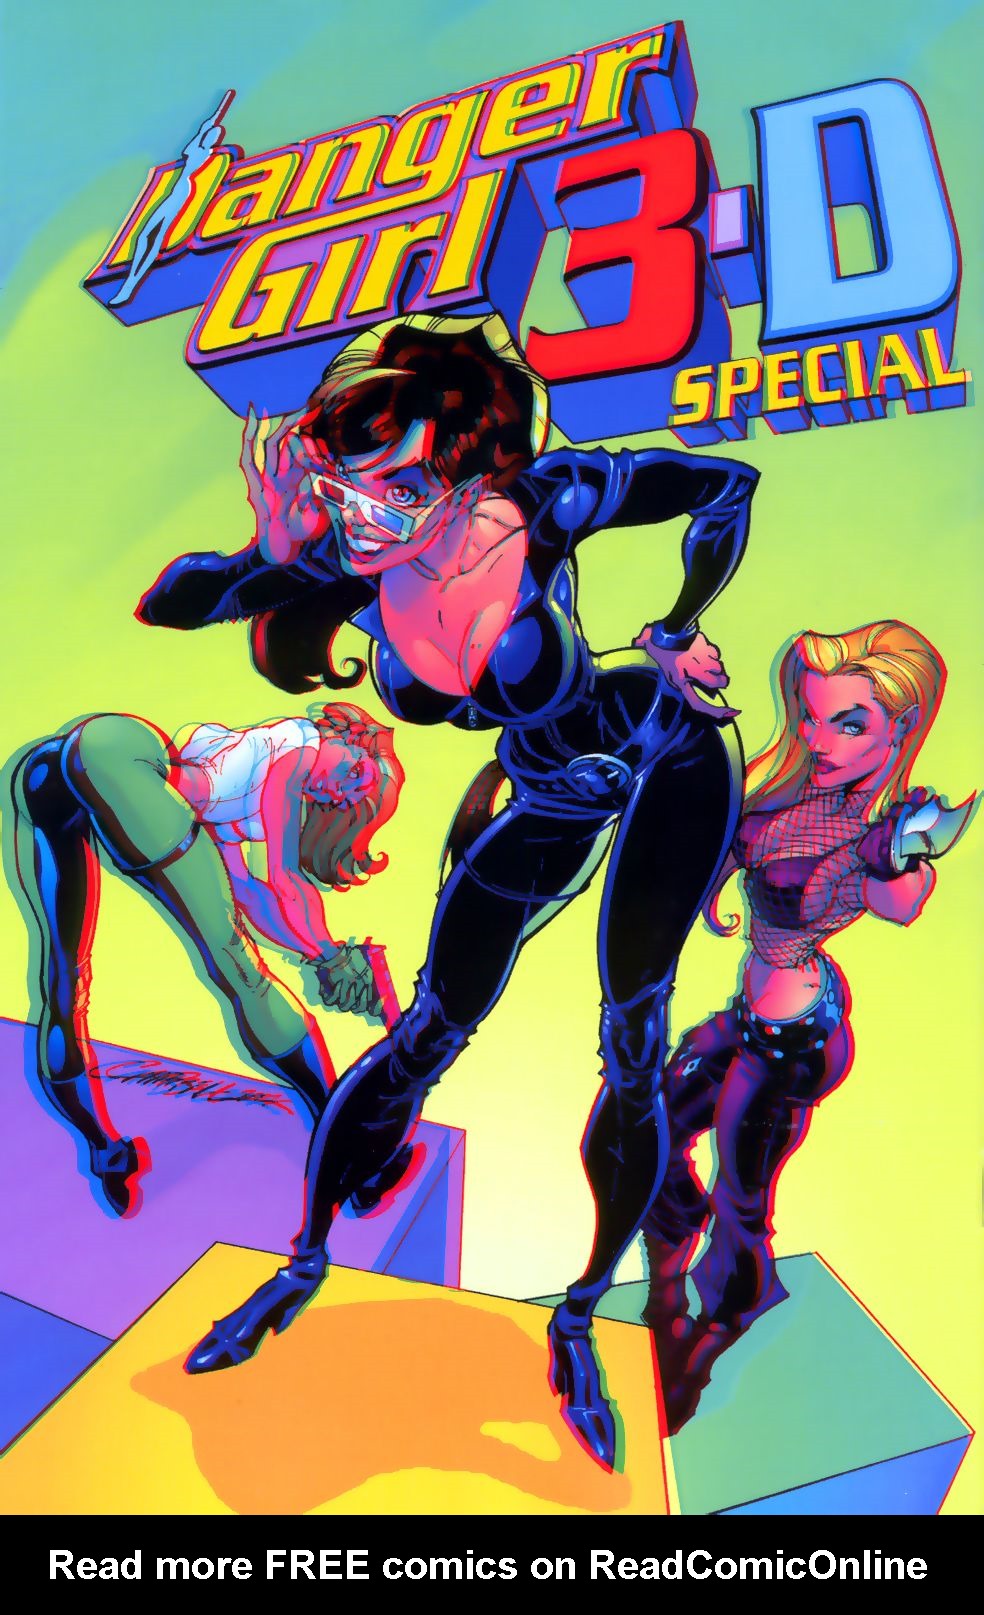 Read online Danger Girl 3-D Special comic -  Issue # Full - 50